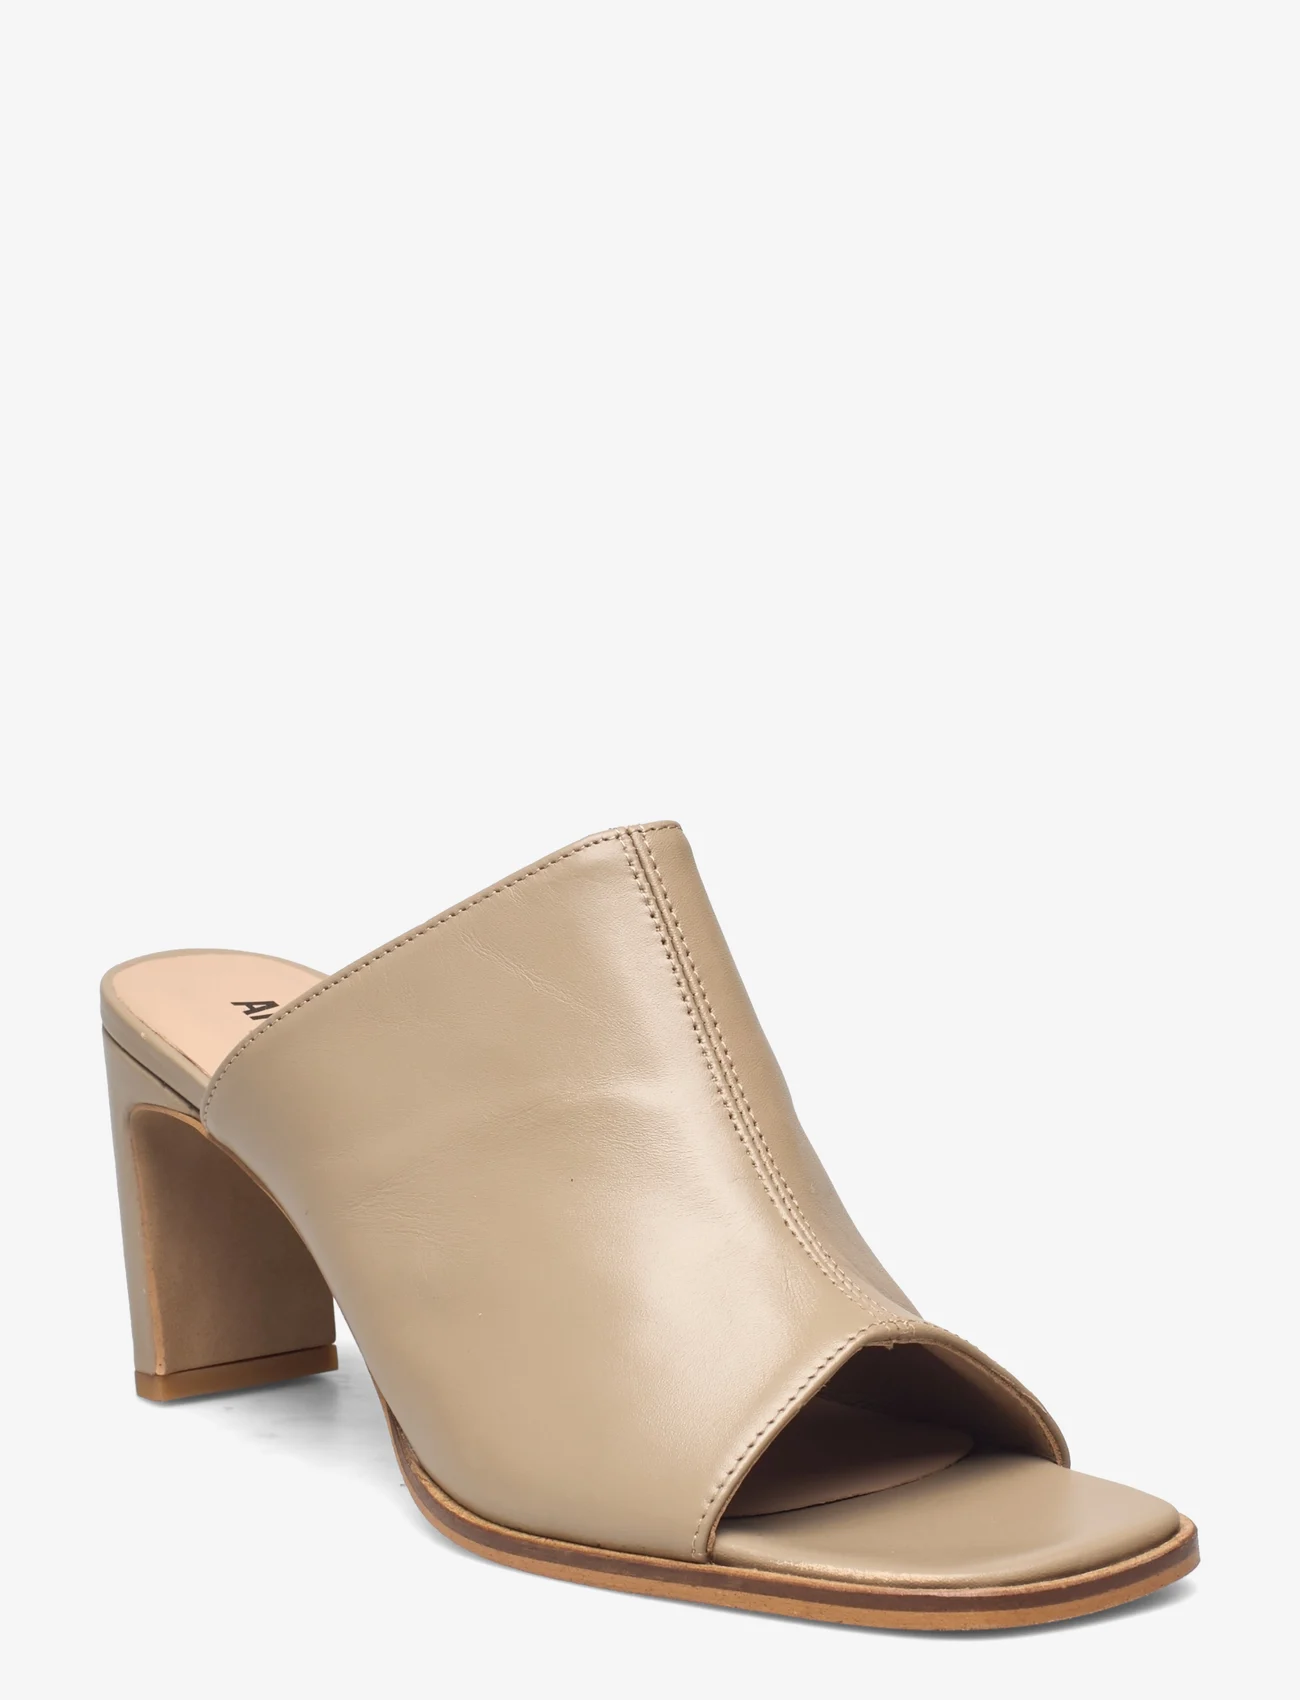 ANGULUS - Sandals - Block heels - mules med klack - 1571 beige - 0